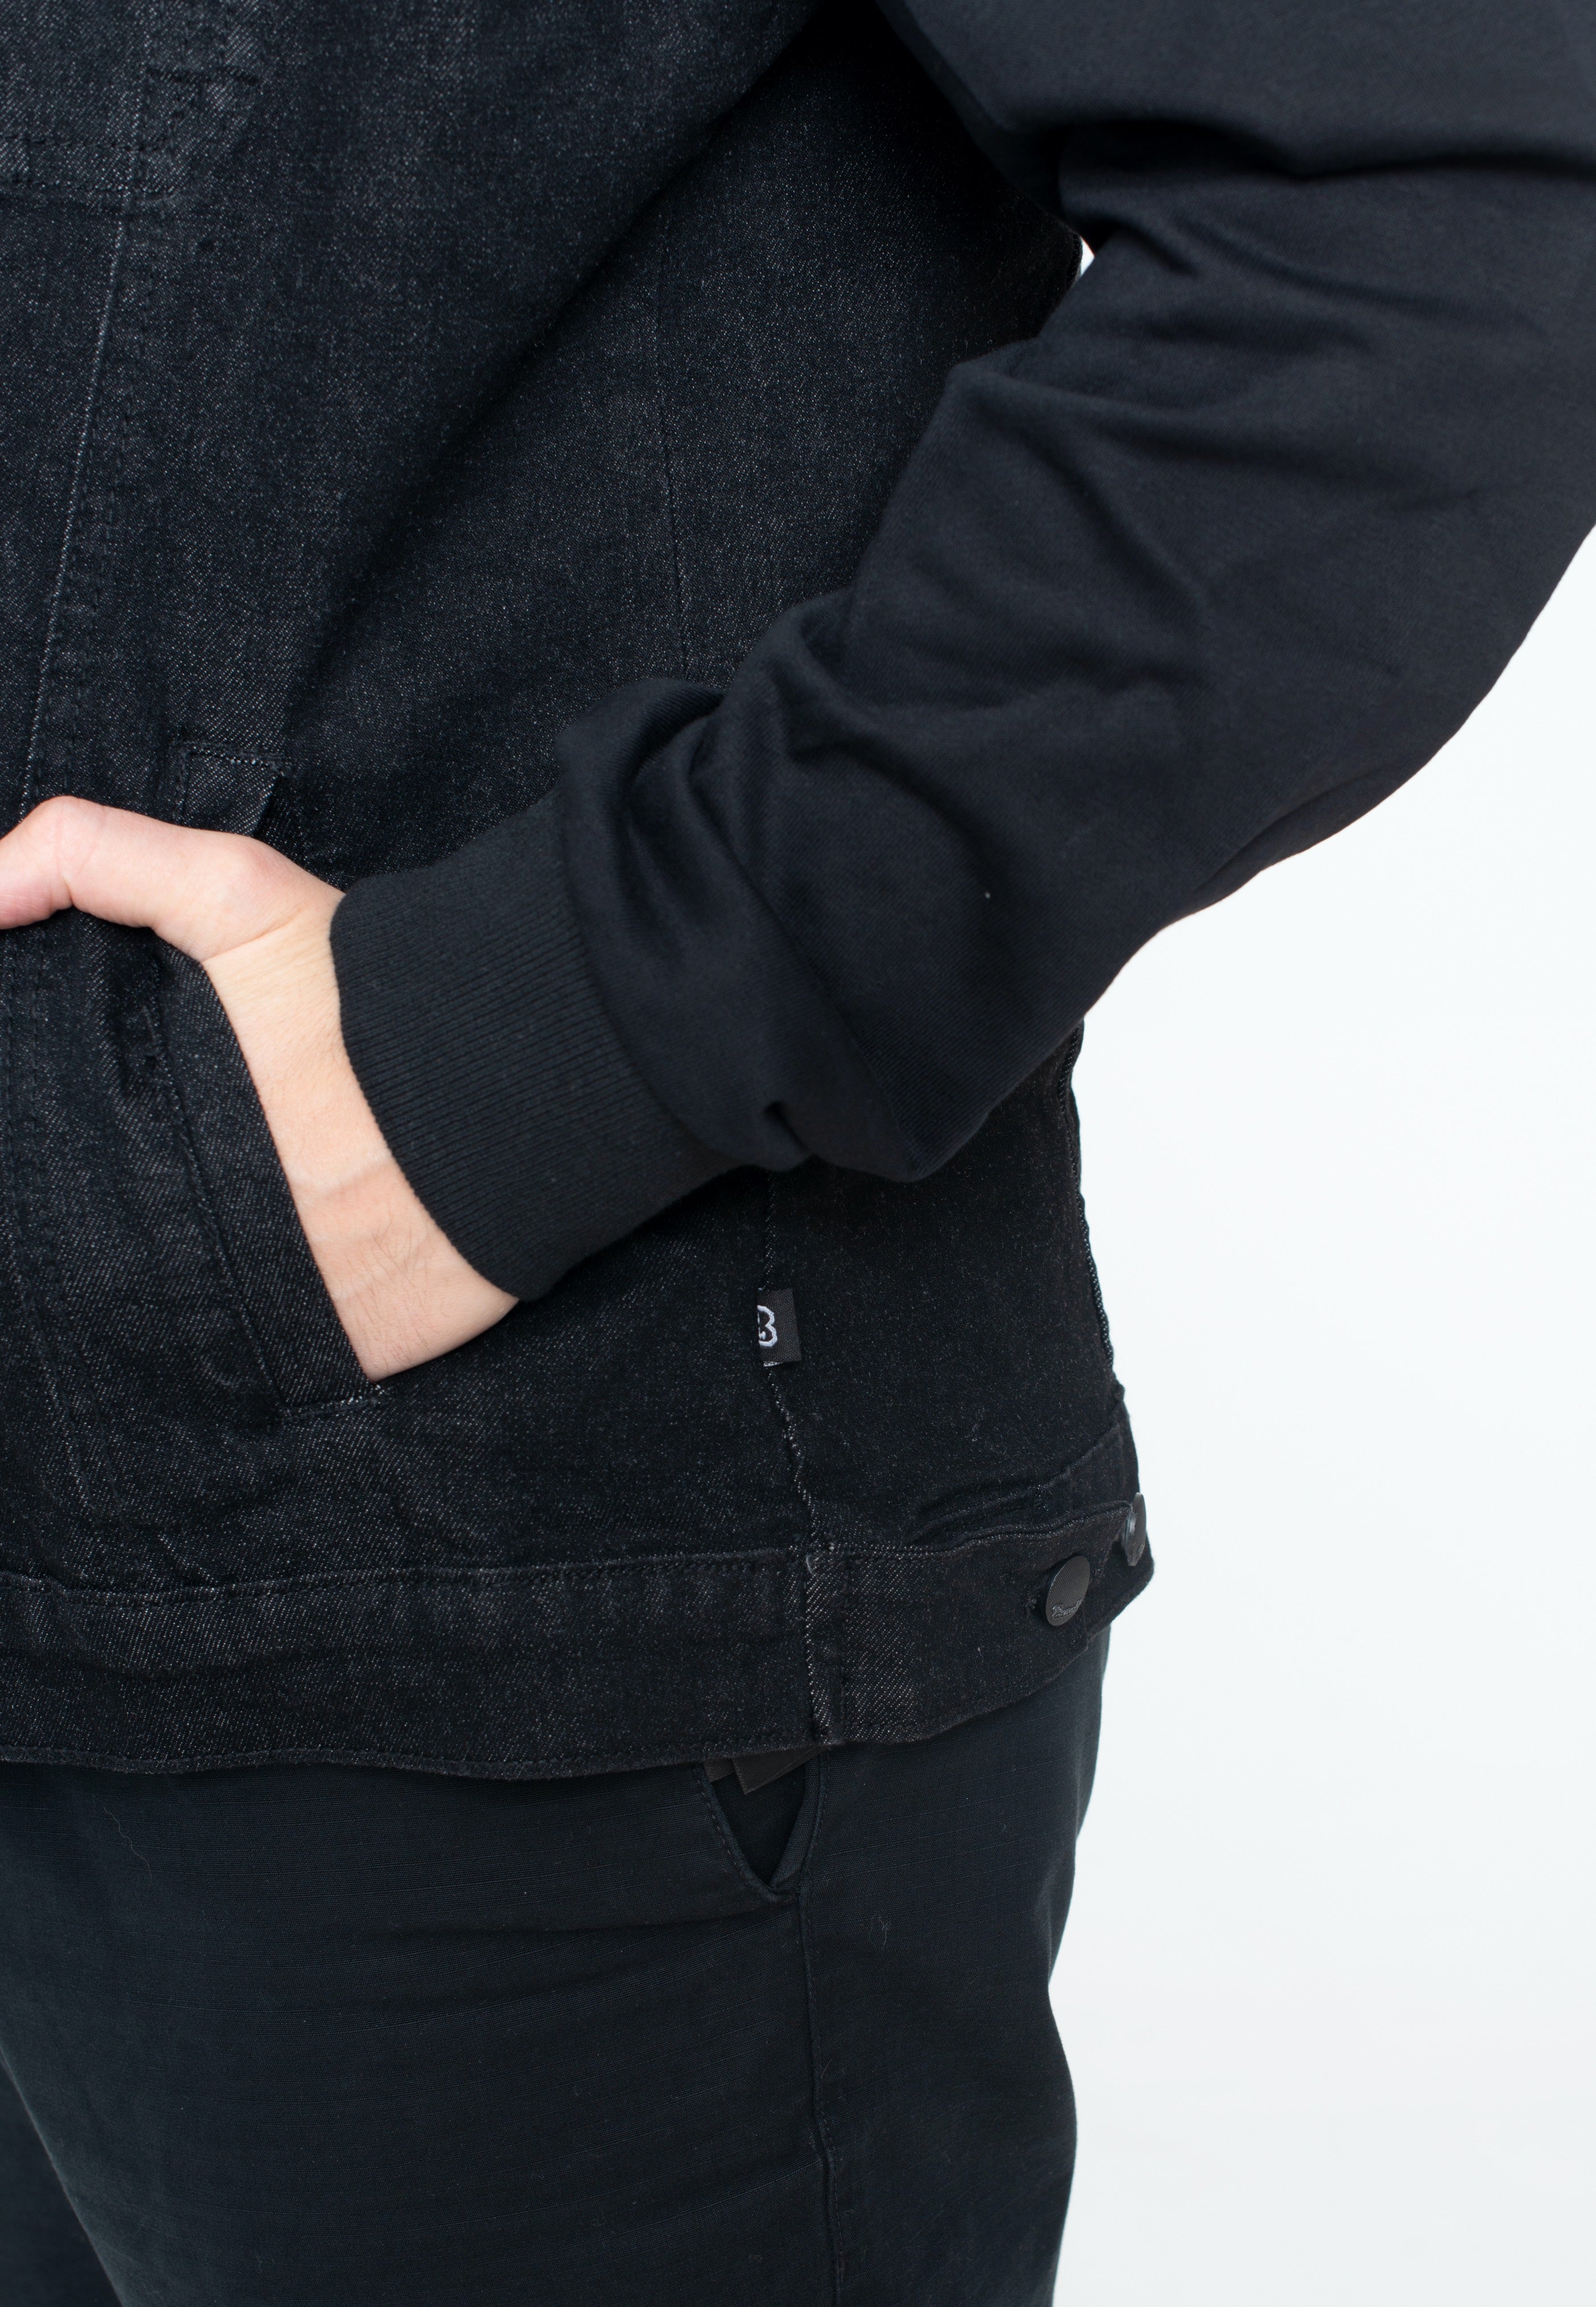 Brandit - Cradock Denim Sweat Black - Jeans Jacket